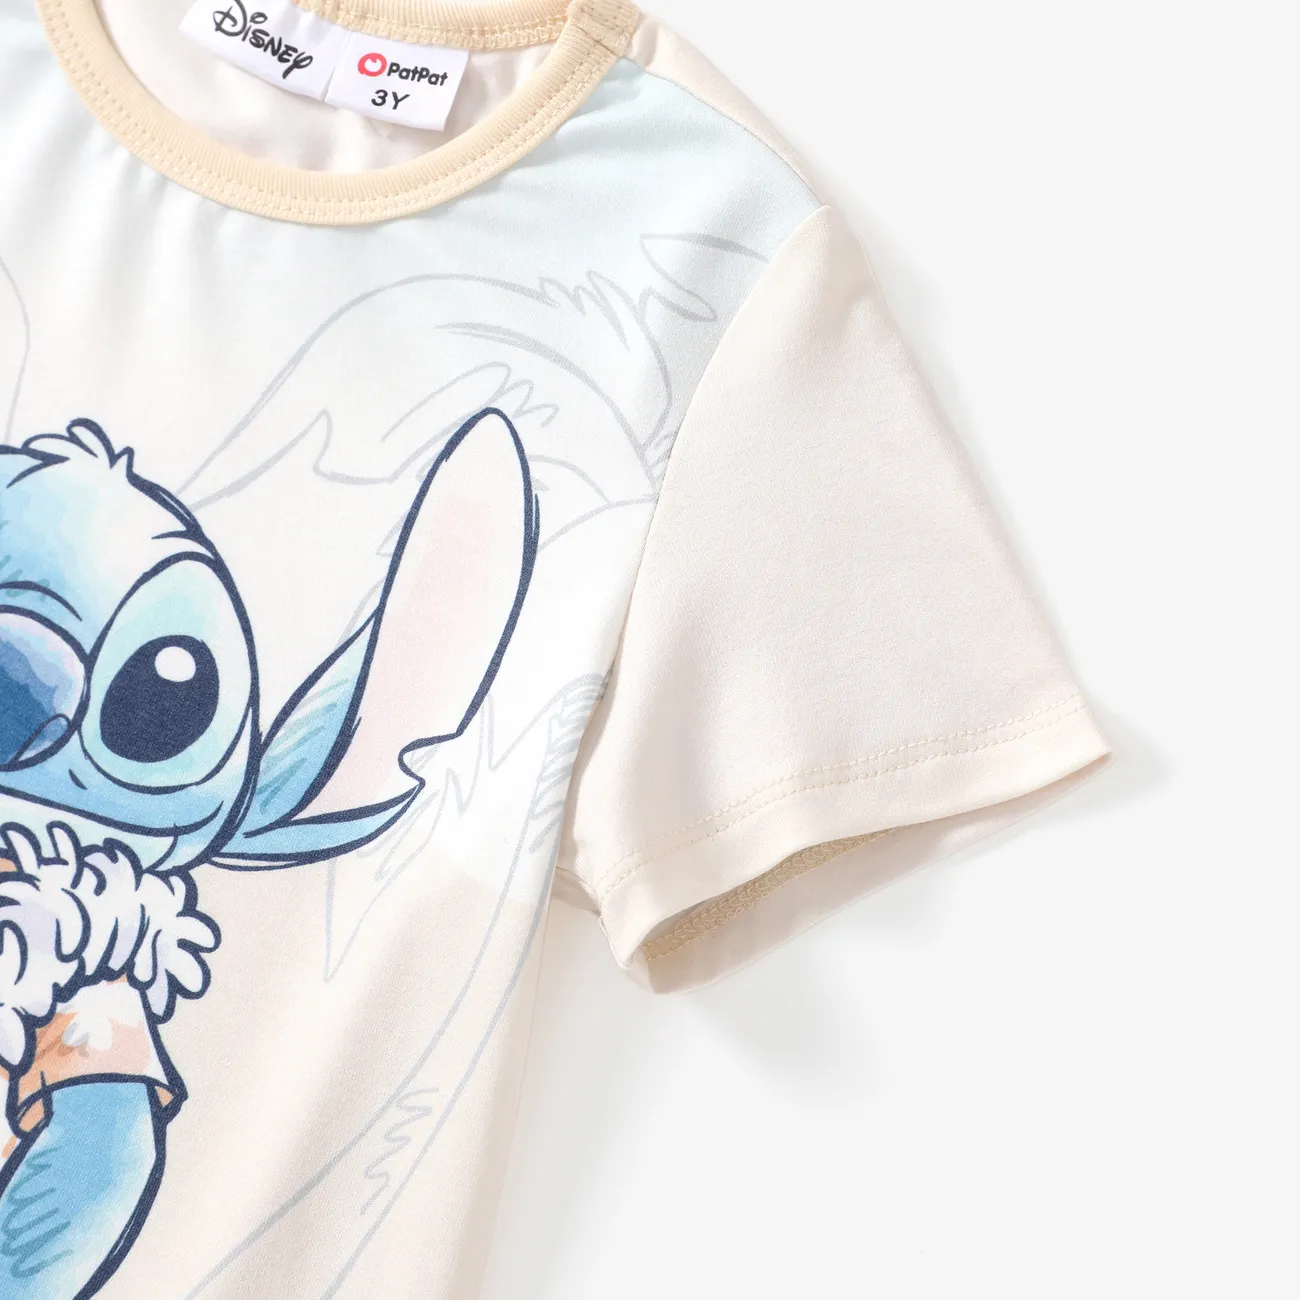 Ponto Disney 2 unidades Criança Menino Infantil conjuntos de camisetas Laranja big image 1